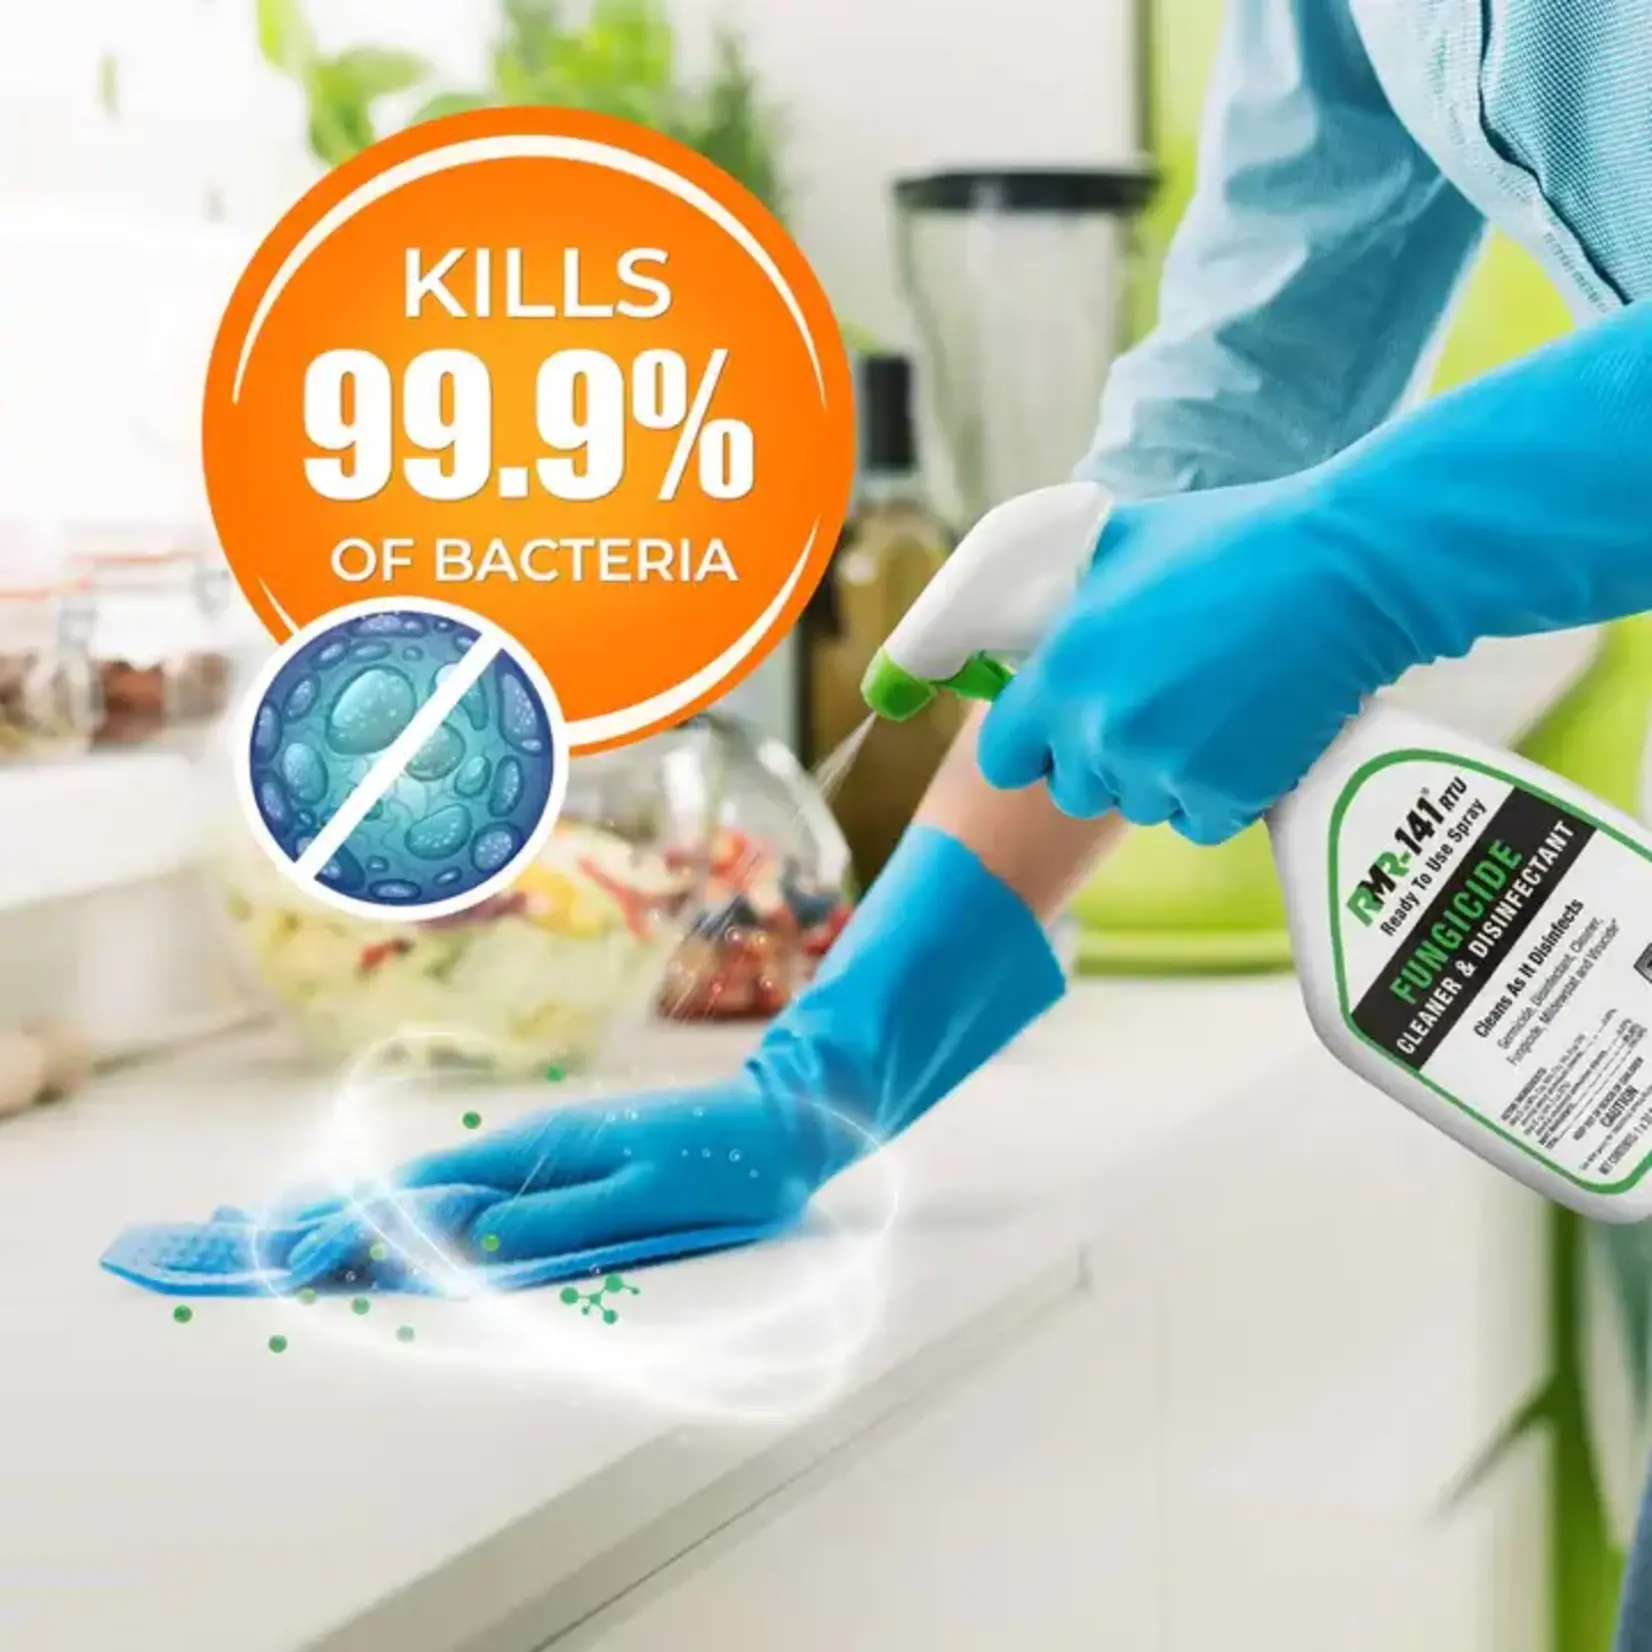 RMR-141 RTU Disinfectant, Fungicide & Cleaner - 1 Qt.